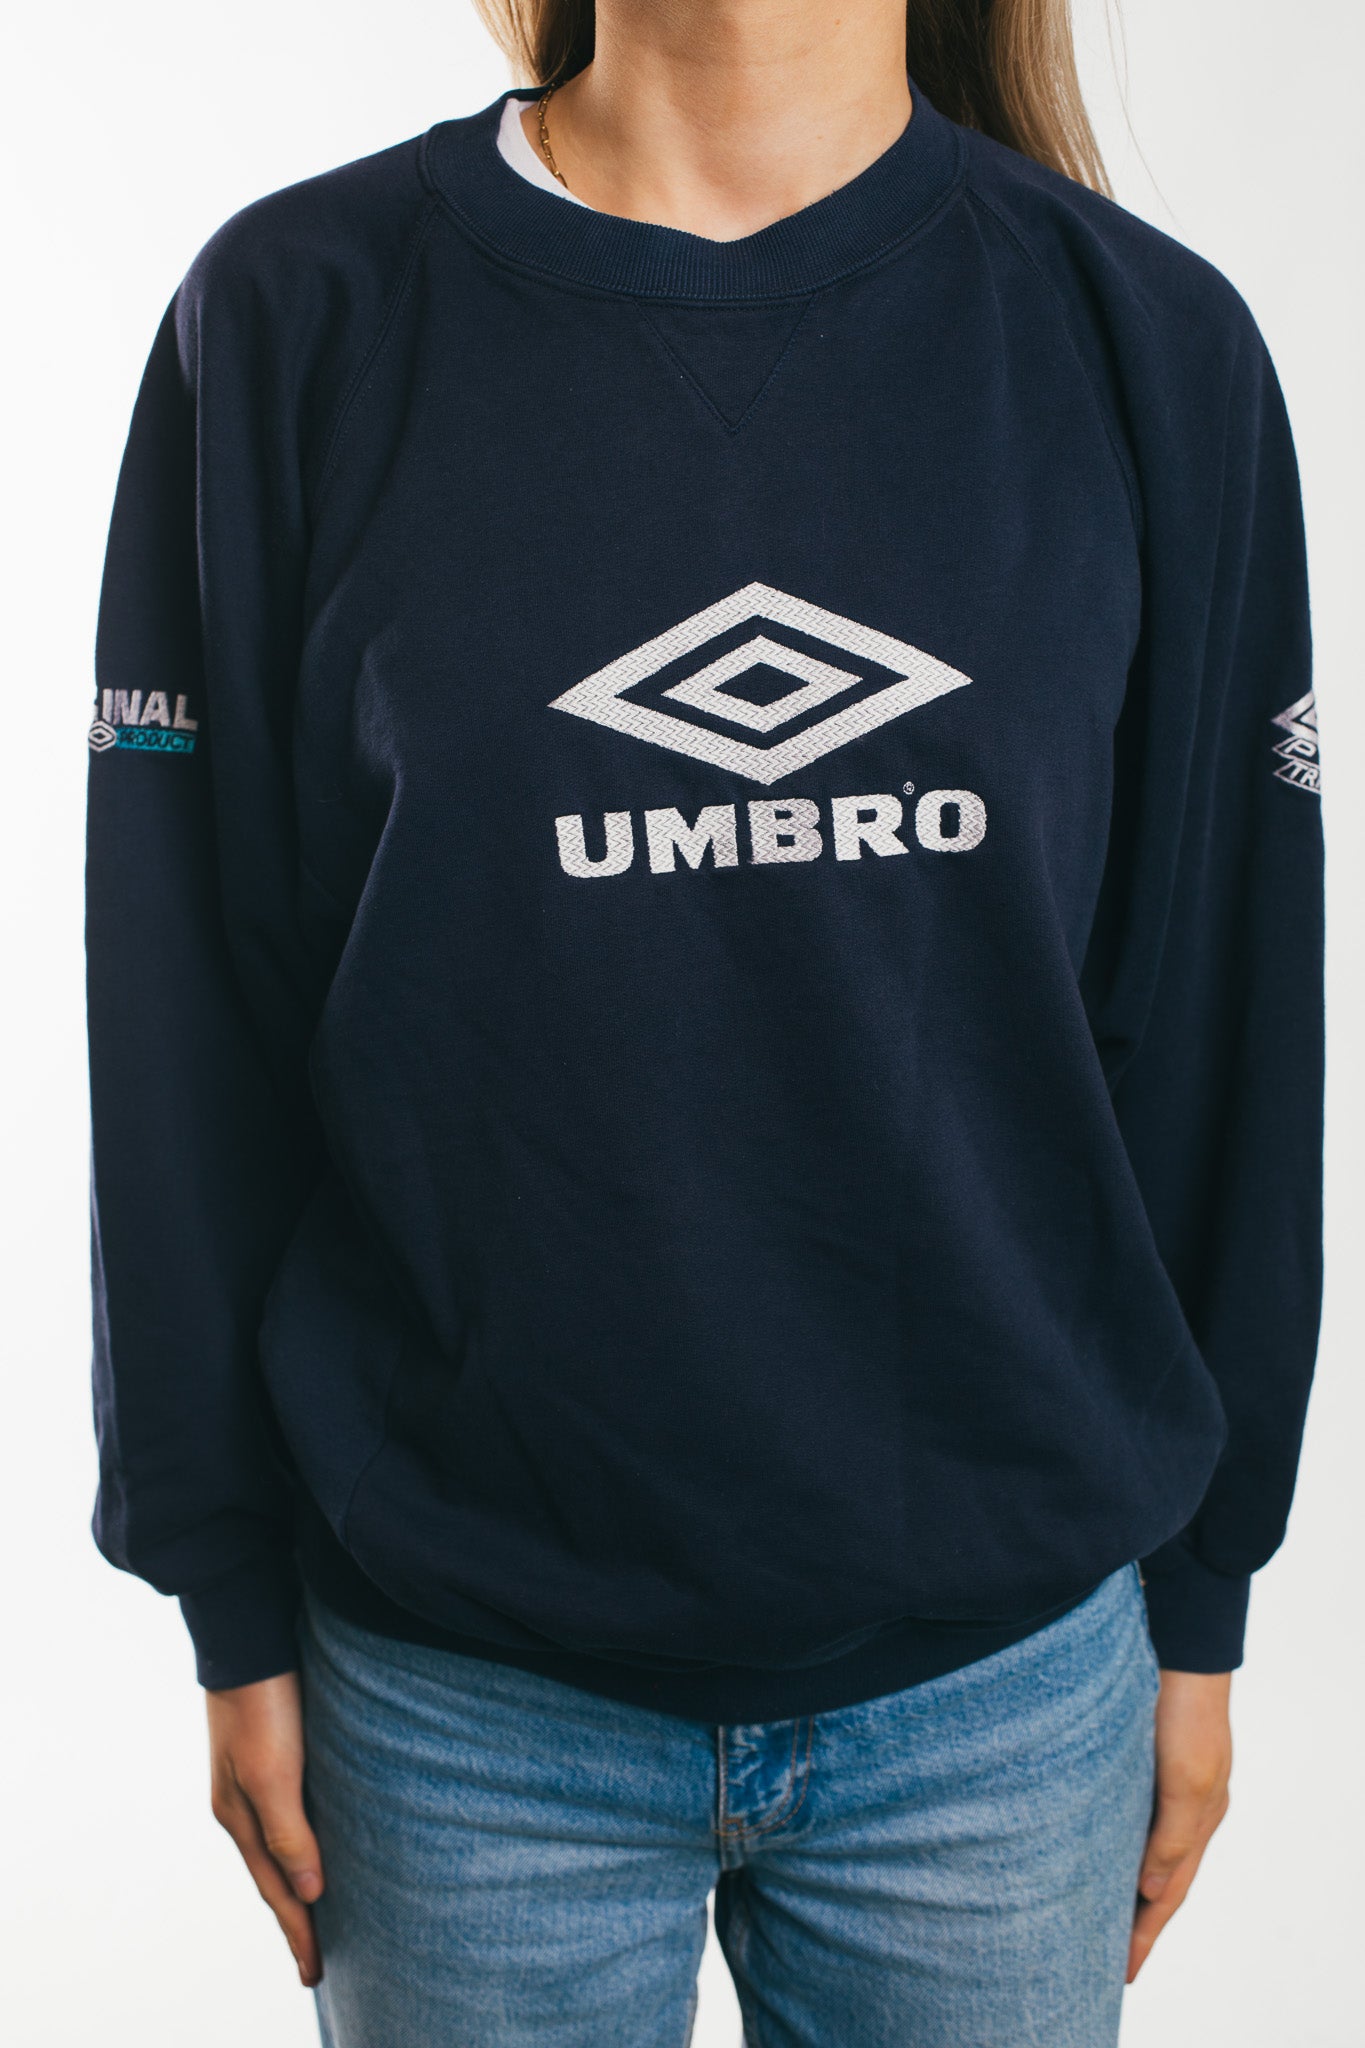 Umbro - Sweatshirt (S)